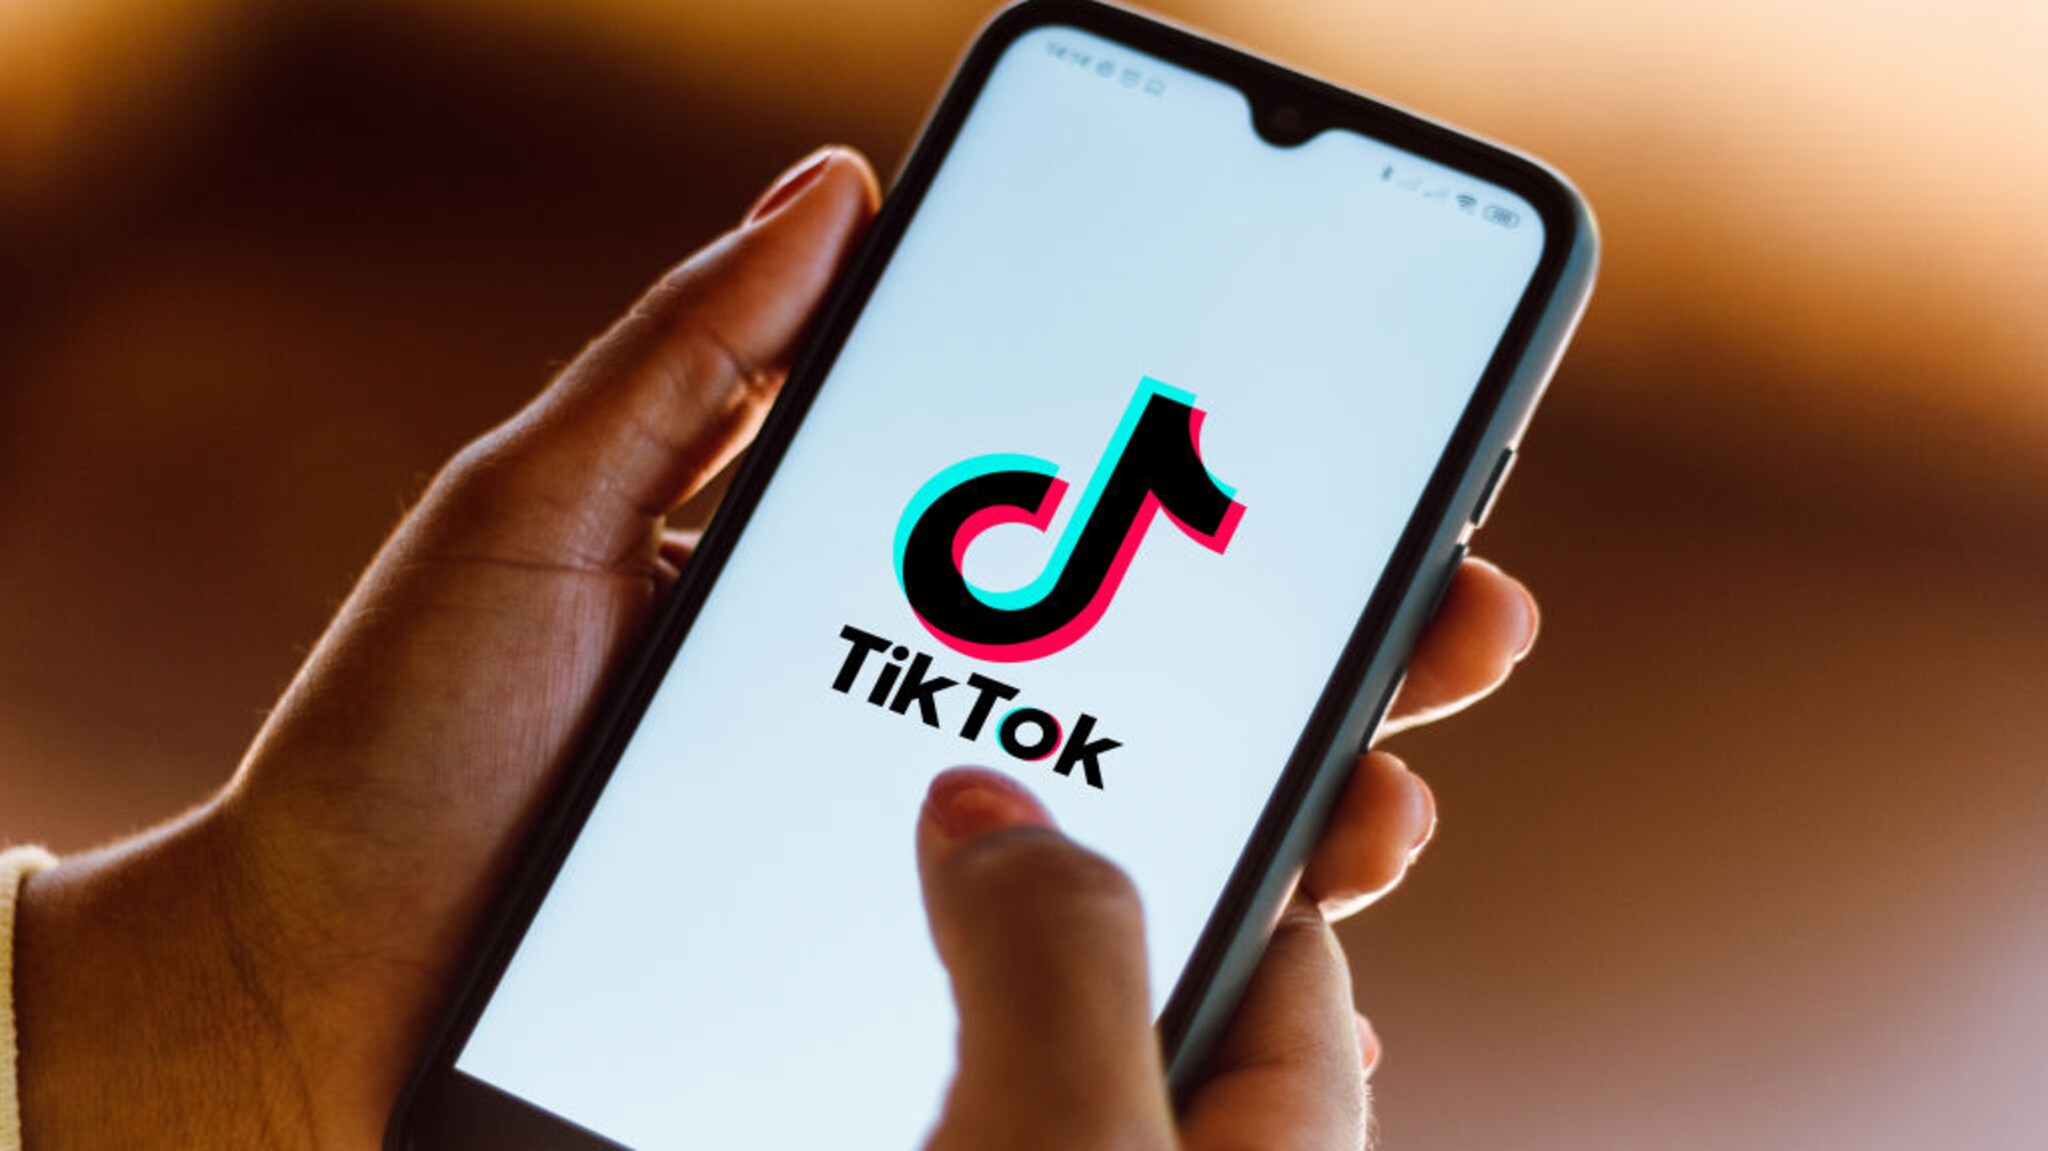 Tải video từ Tiktok không có logo